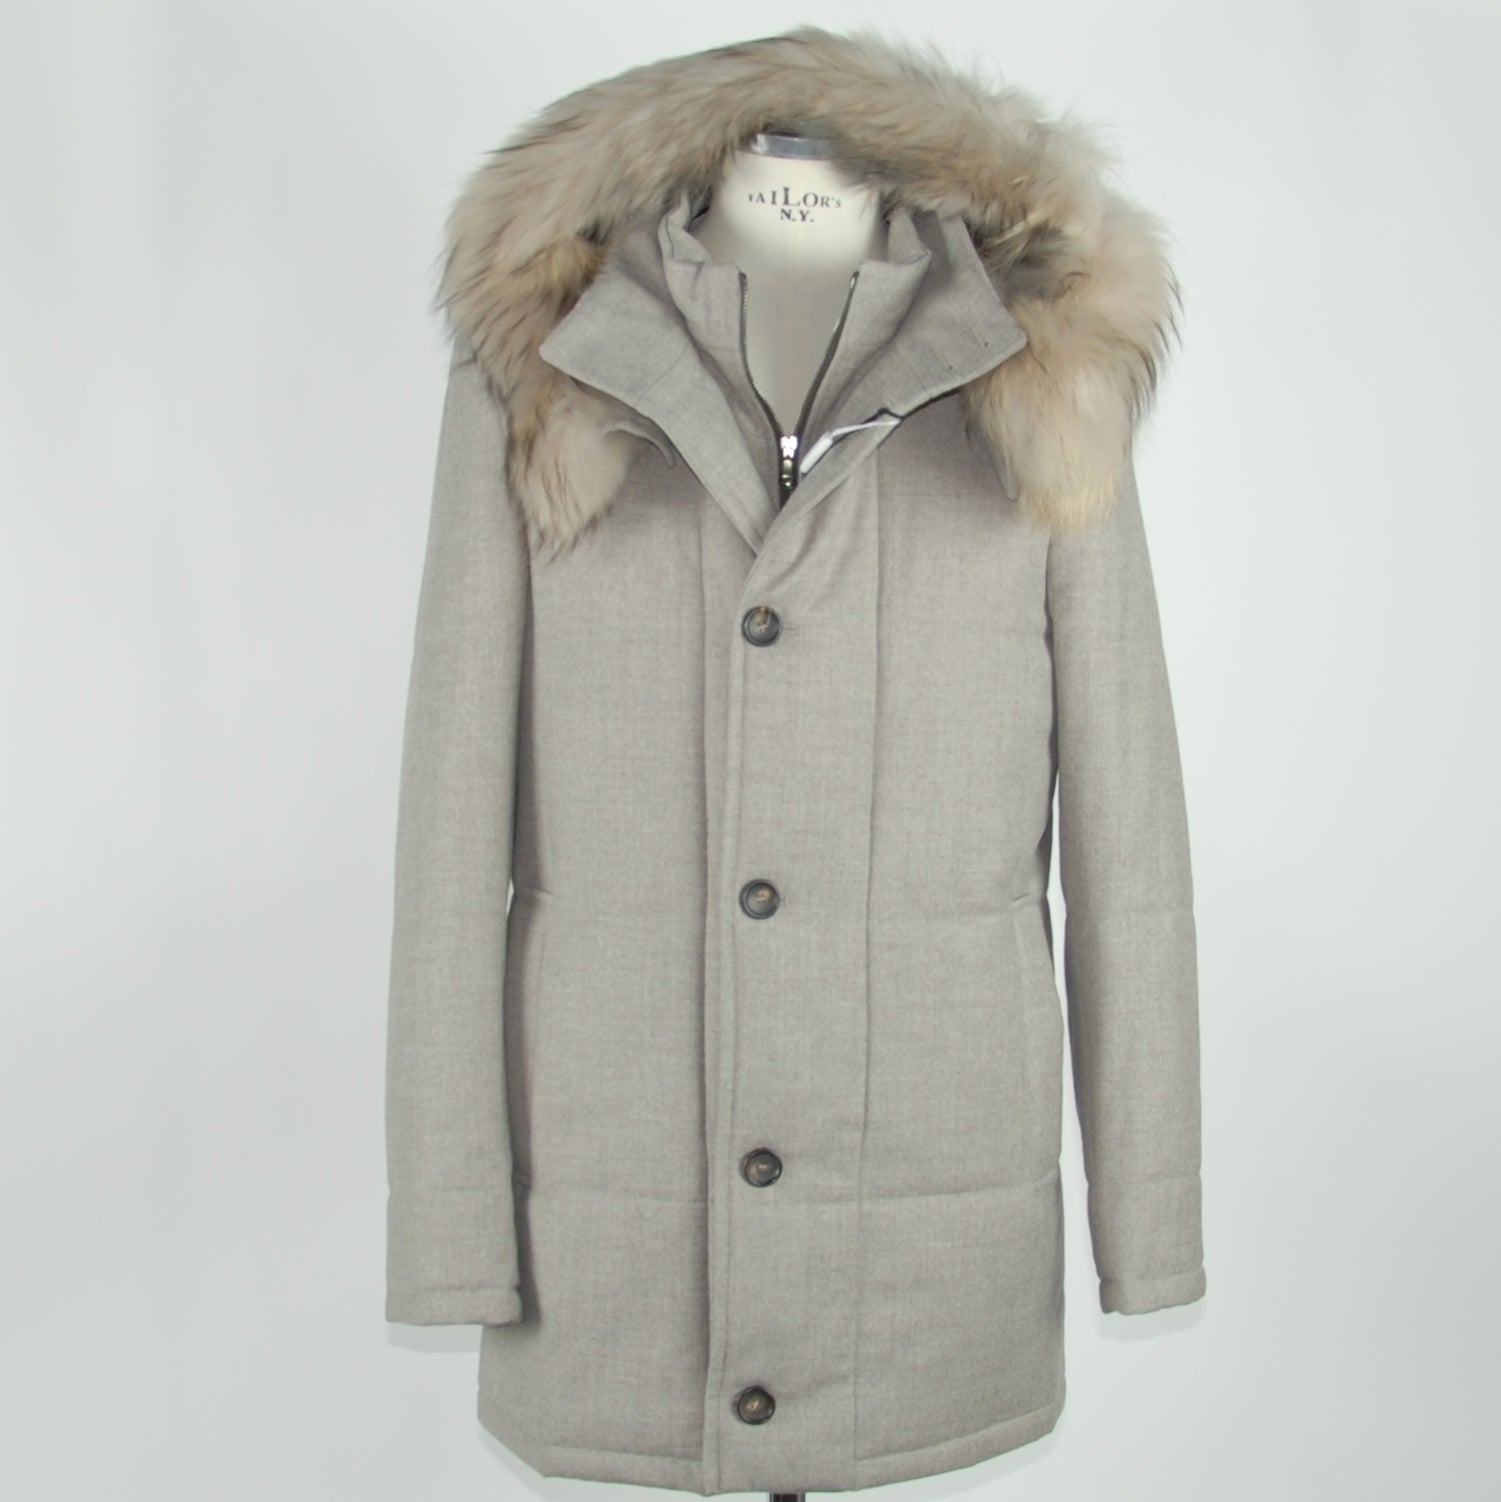 Made in Italy Gray Wool Jacket - Fizigo